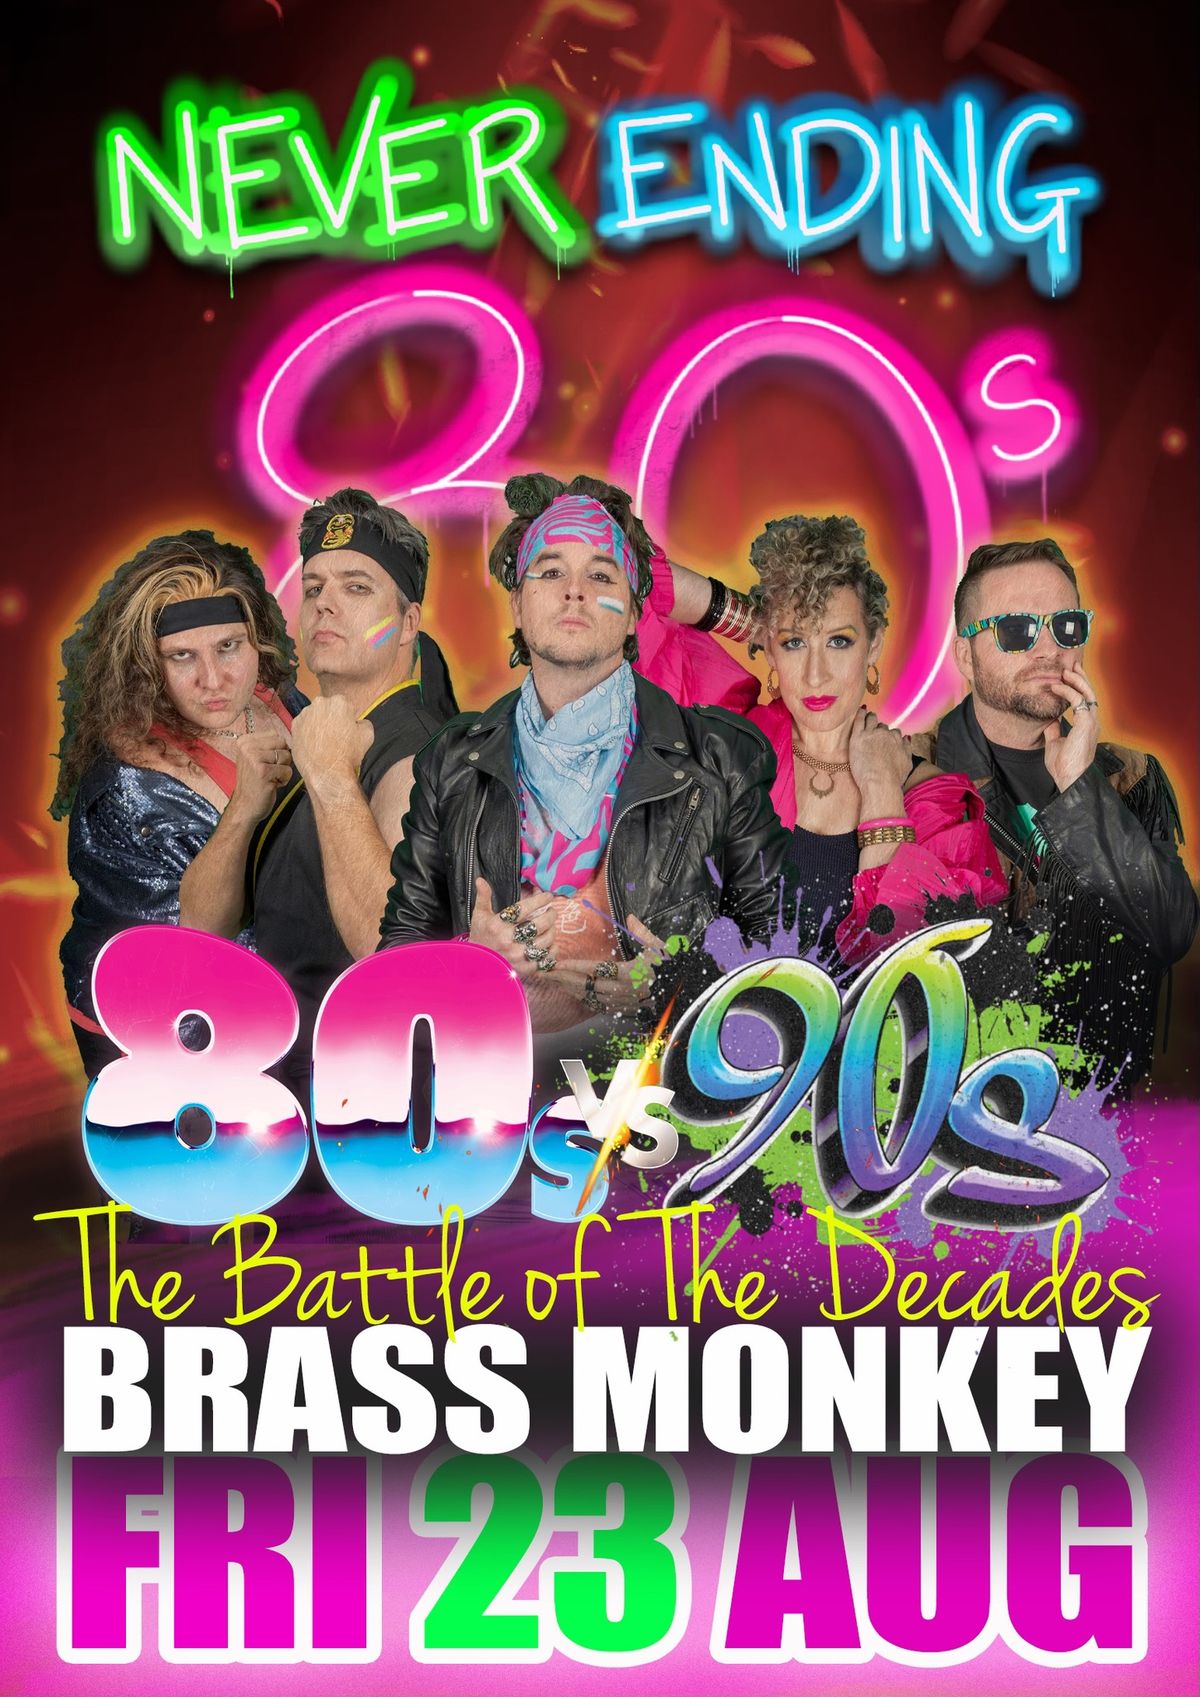 Never Ending 80s v 90s Party -  Brass Monkey Cronulla 